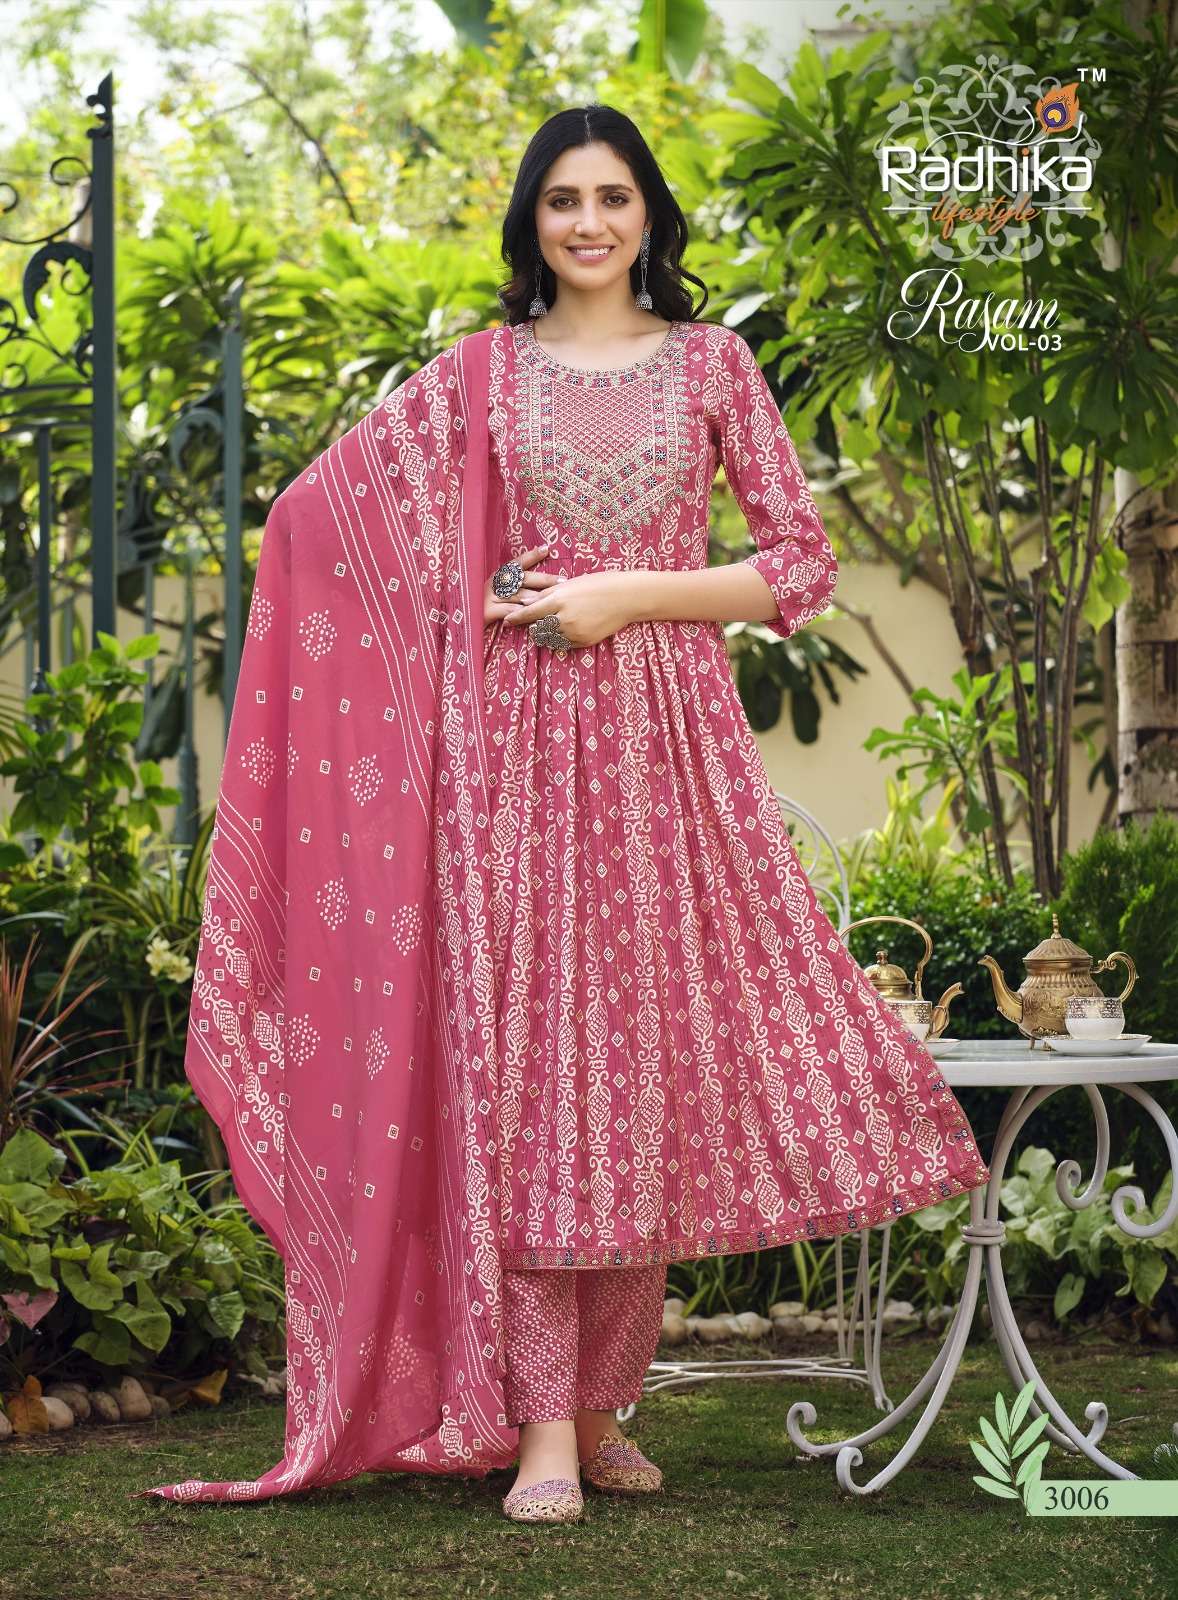 radhika lifestyle rasam vol-3 3001-3008 nayra cut fancy designer kurtis wholesale price surat